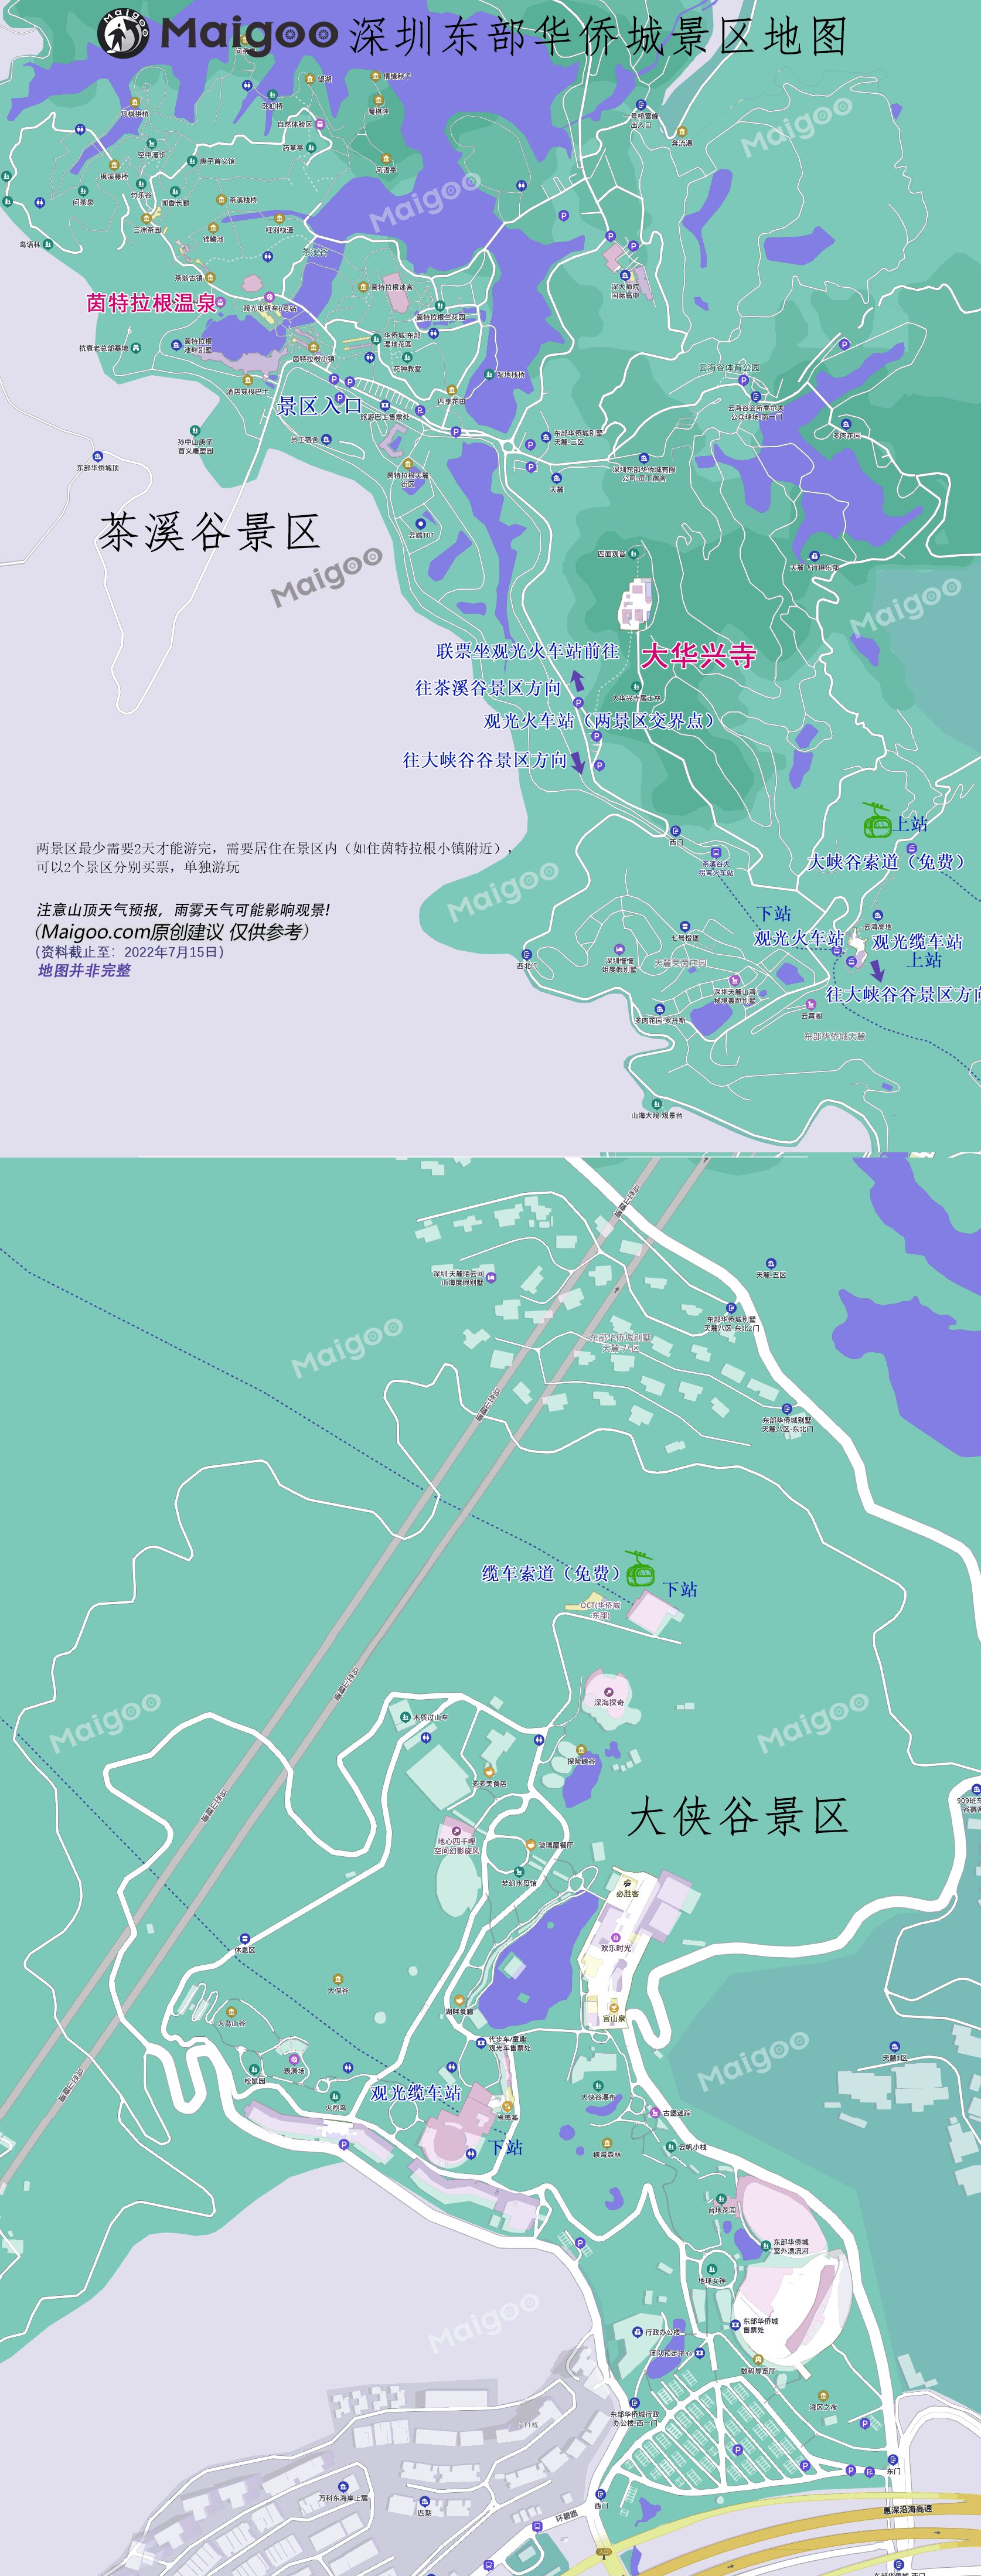 東部華僑城旅游度假區-簡介游玩攻略地址在哪怎么樣好玩嗎